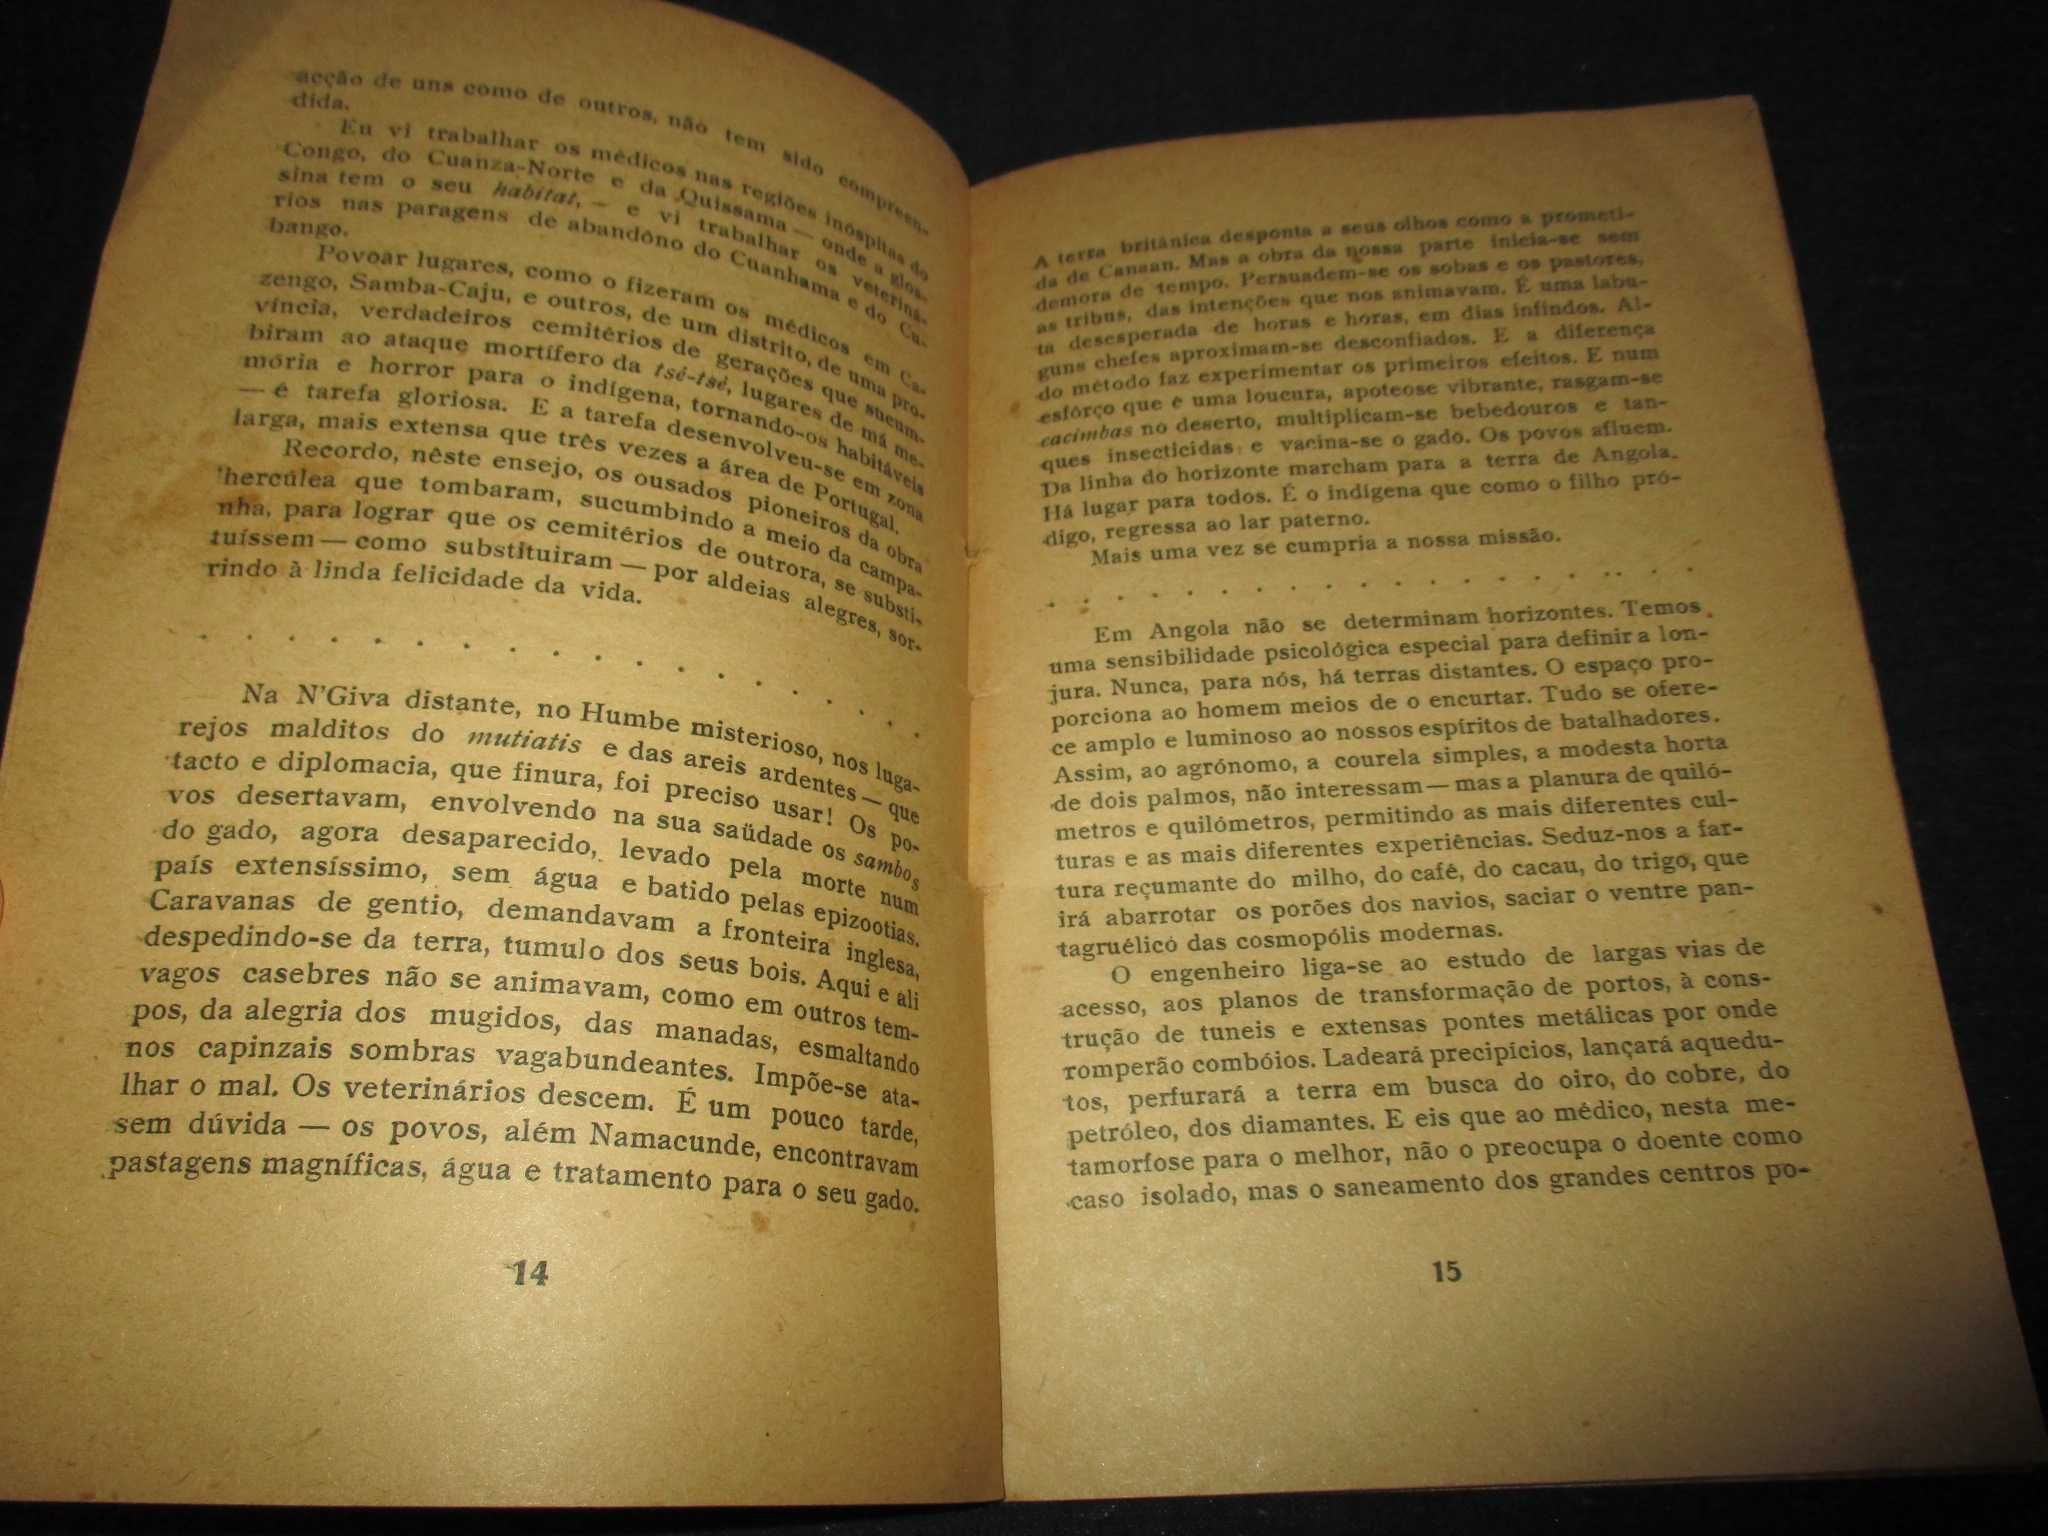 Livro Aspectos de Angola Norberto Gonzaga